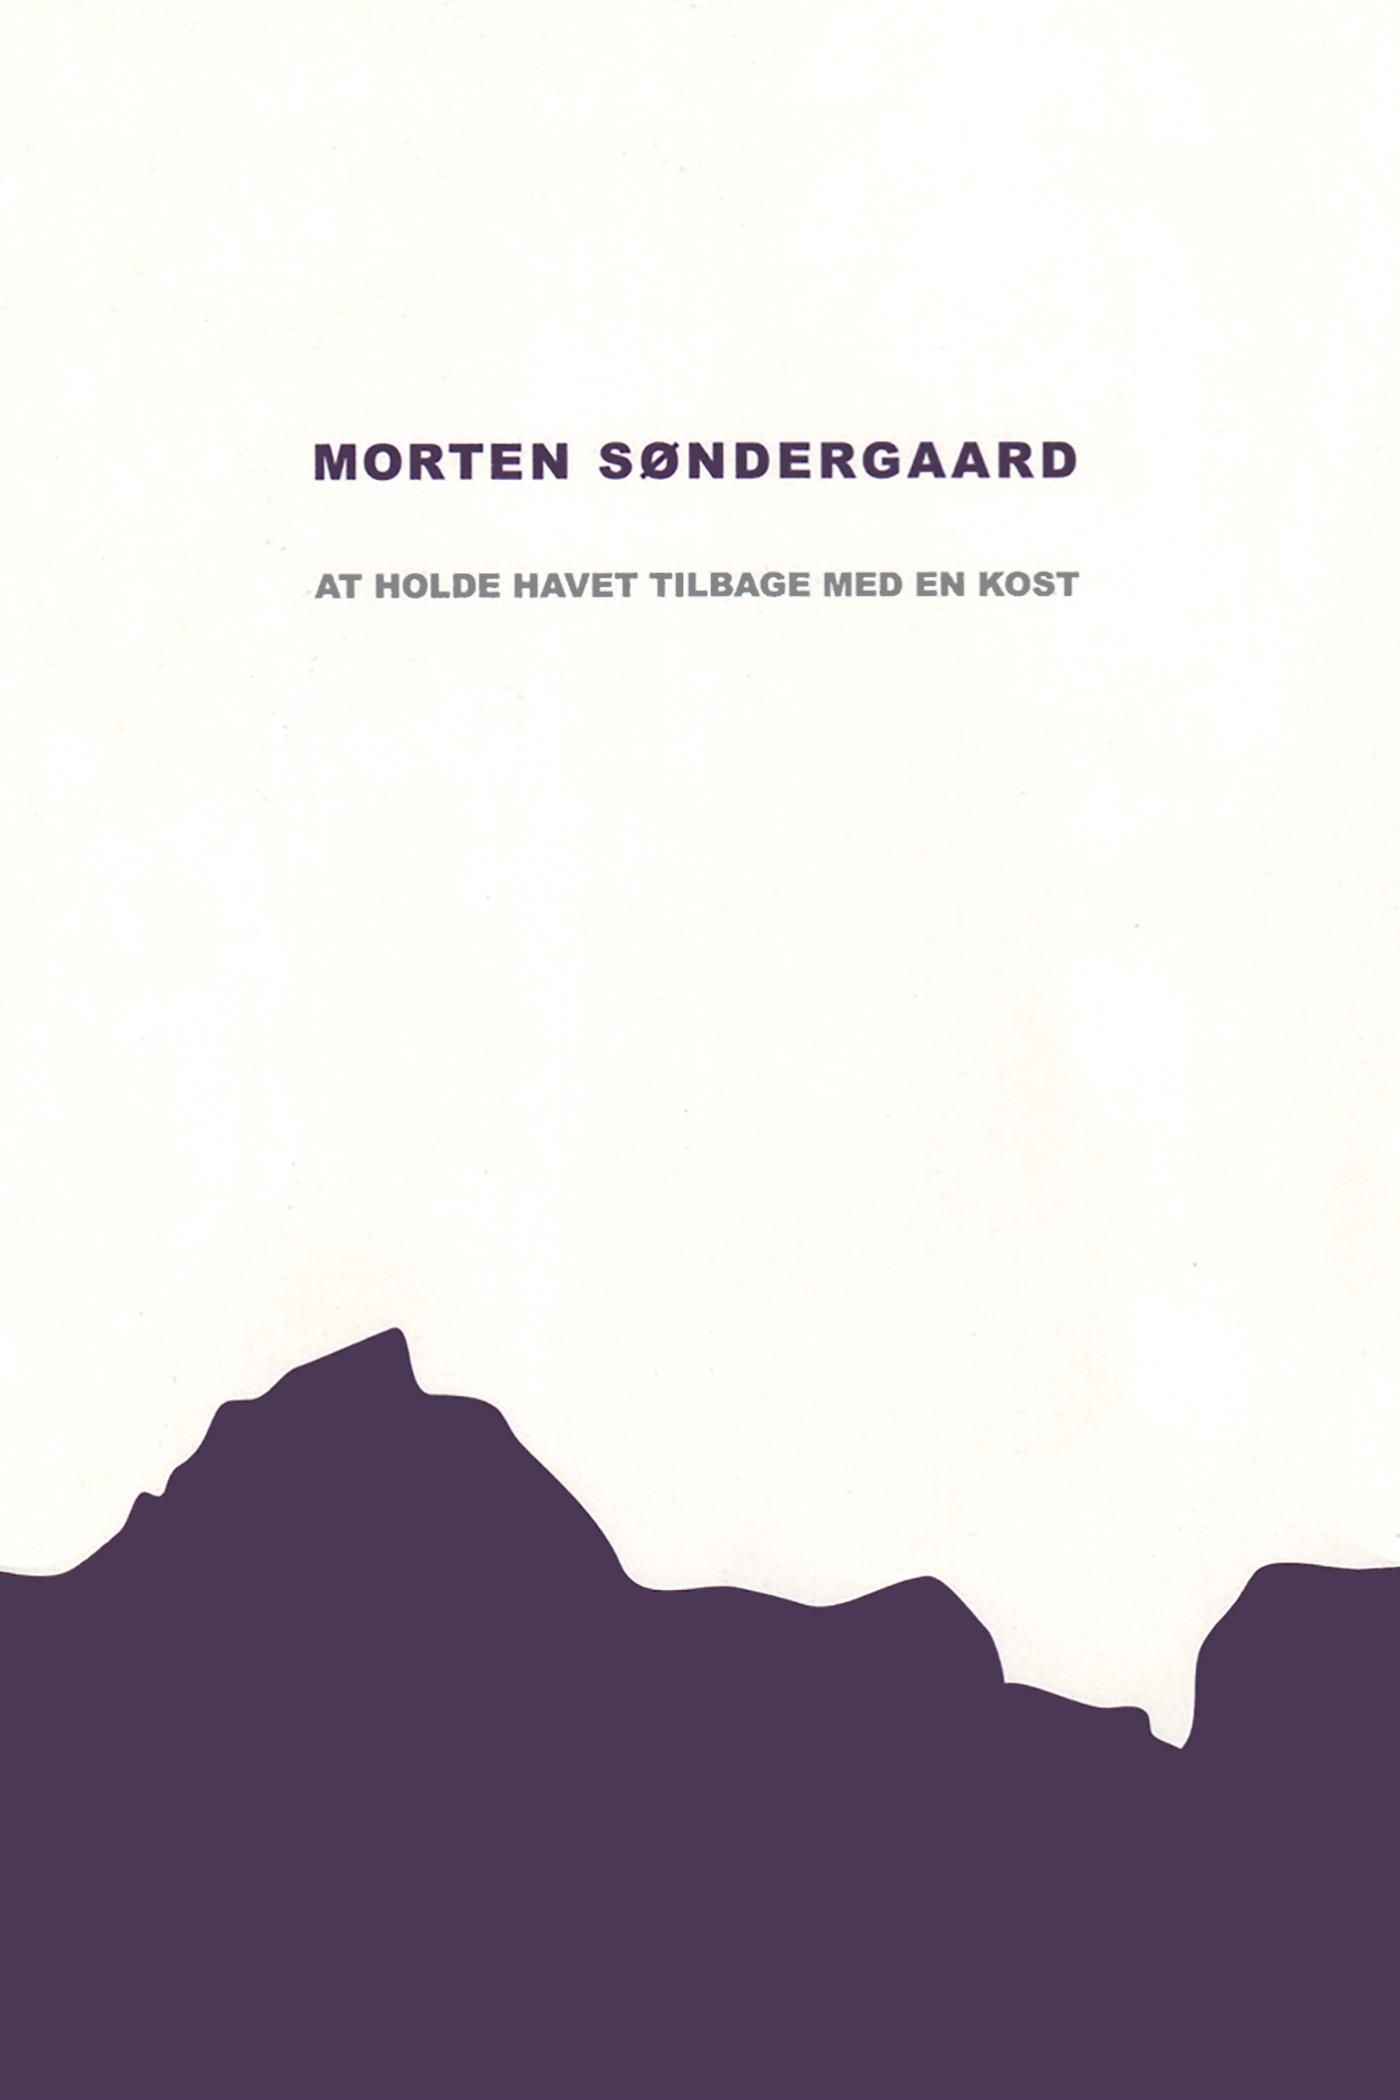 At holde havet tilbage med en kost, e-bog af Morten Søndergaard